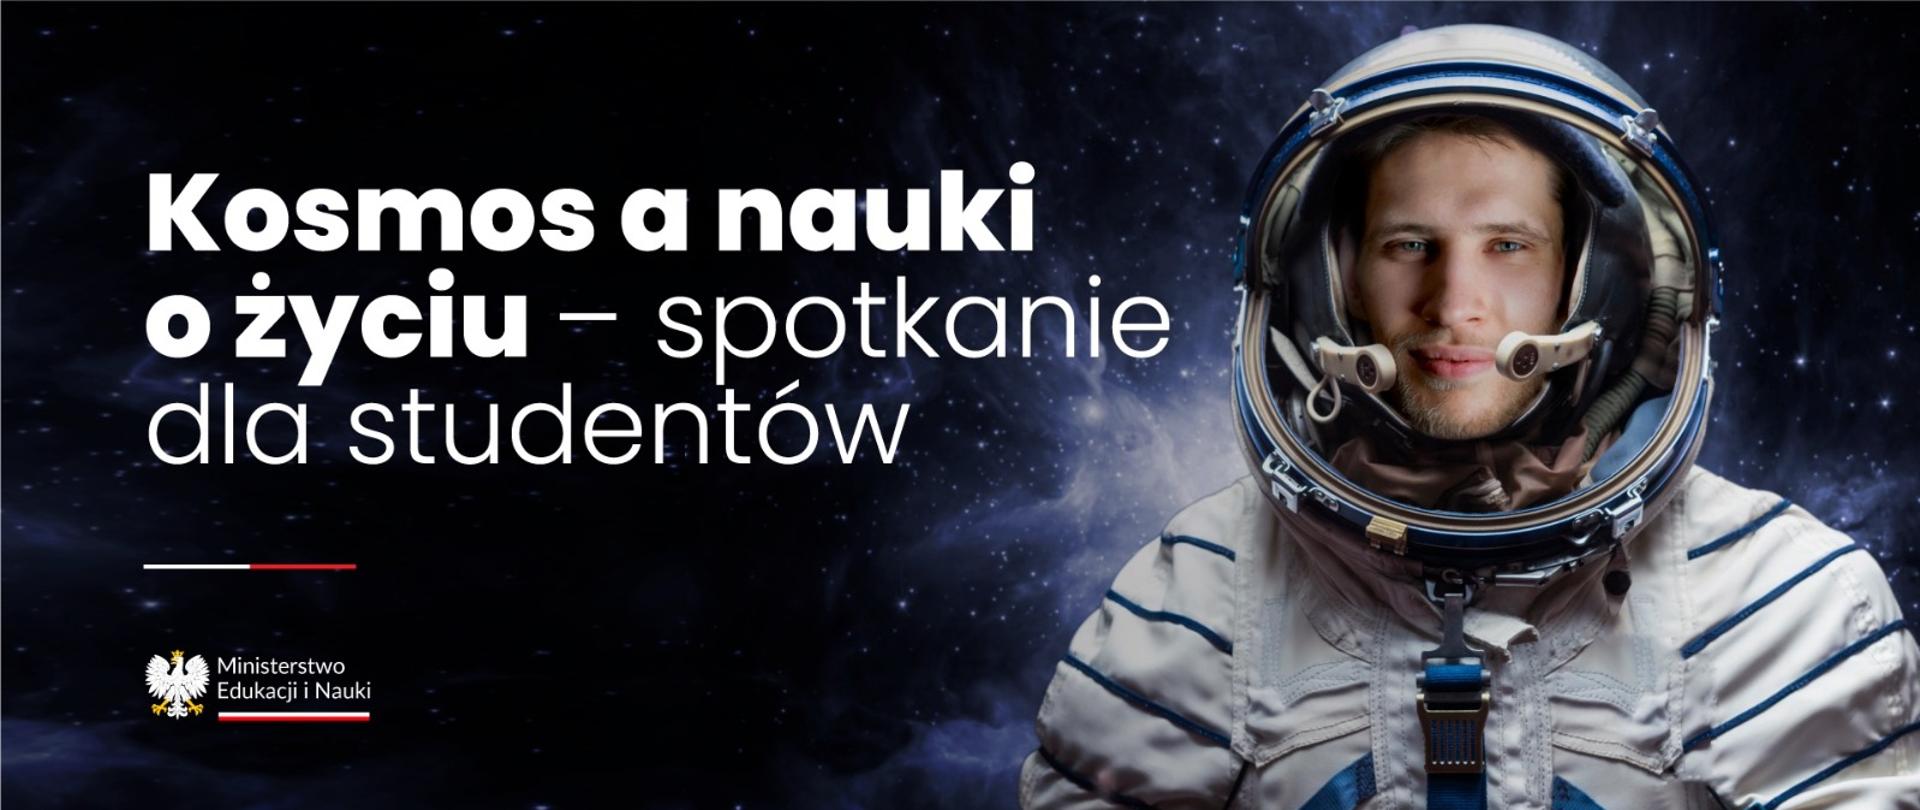 Mężczyzna w stroju kosmonauty i napis: Kosmos a nauki o życiu – spotkanie dla studentów